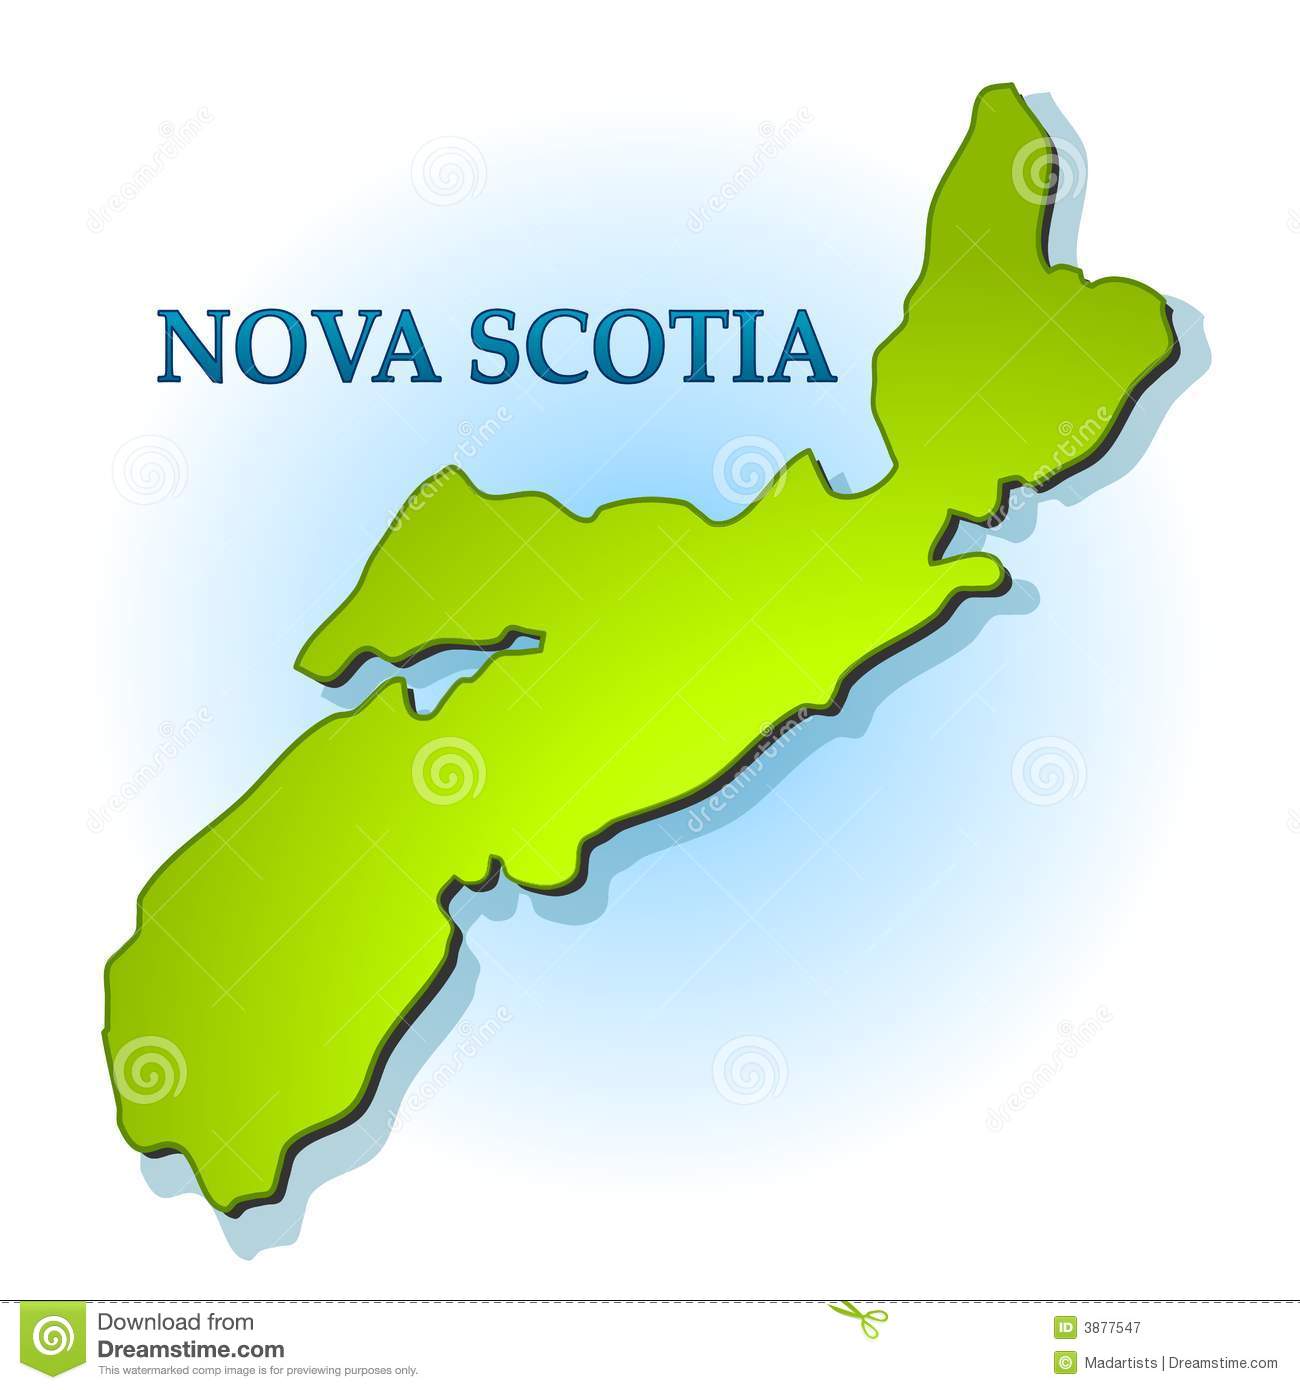 Nova Scotia clipart #18, Download drawings